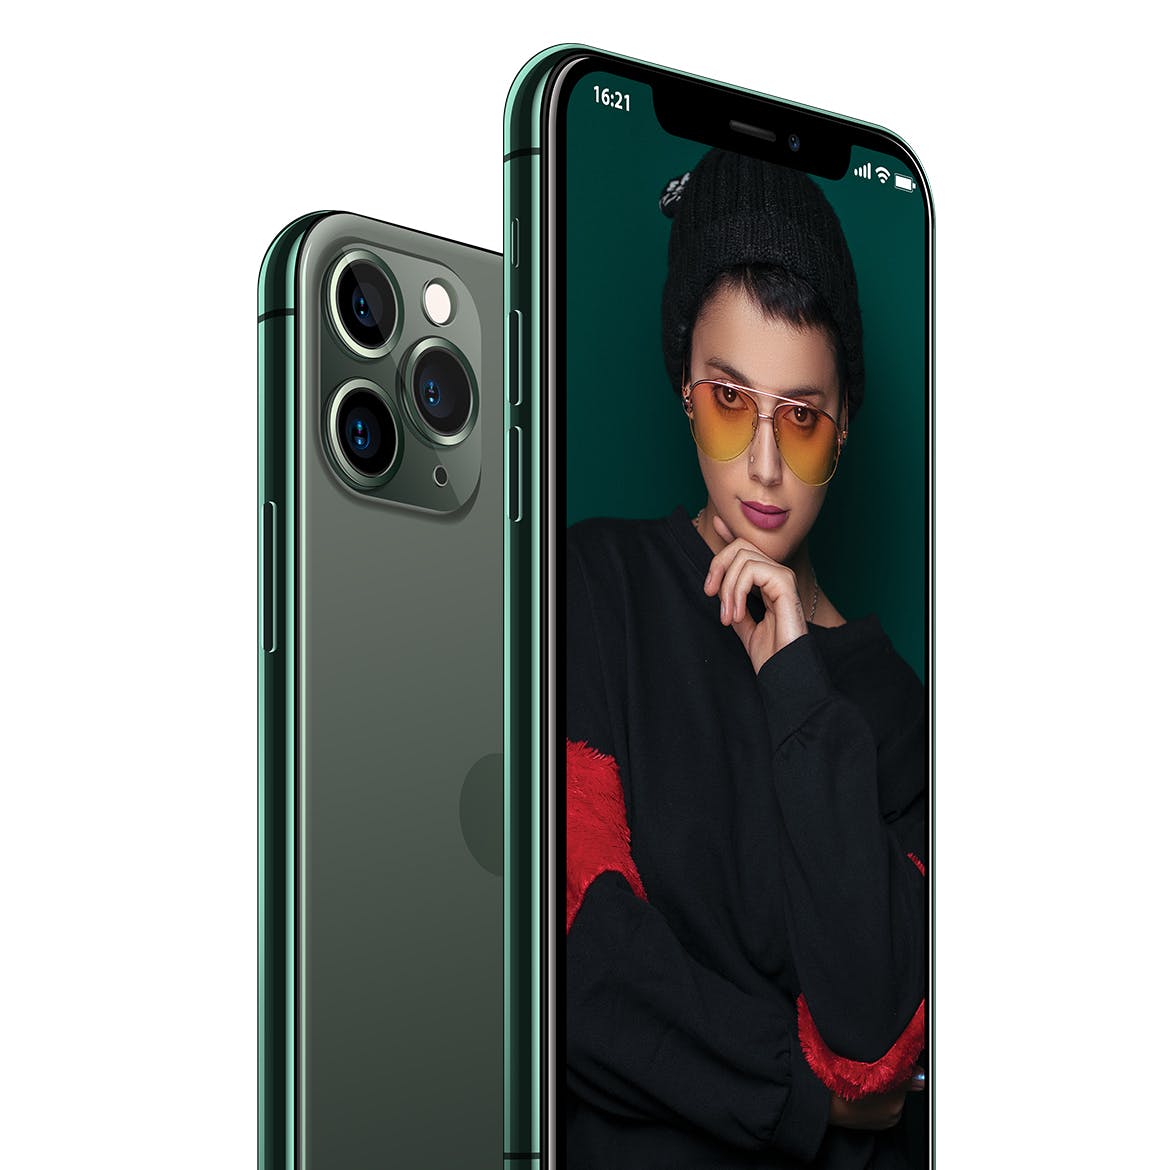 2019全新一代iPhone 11 Pro侧立面正反面视图样机模板 iPhone 11 Pro Layered PSD Mock-ups插图(3)